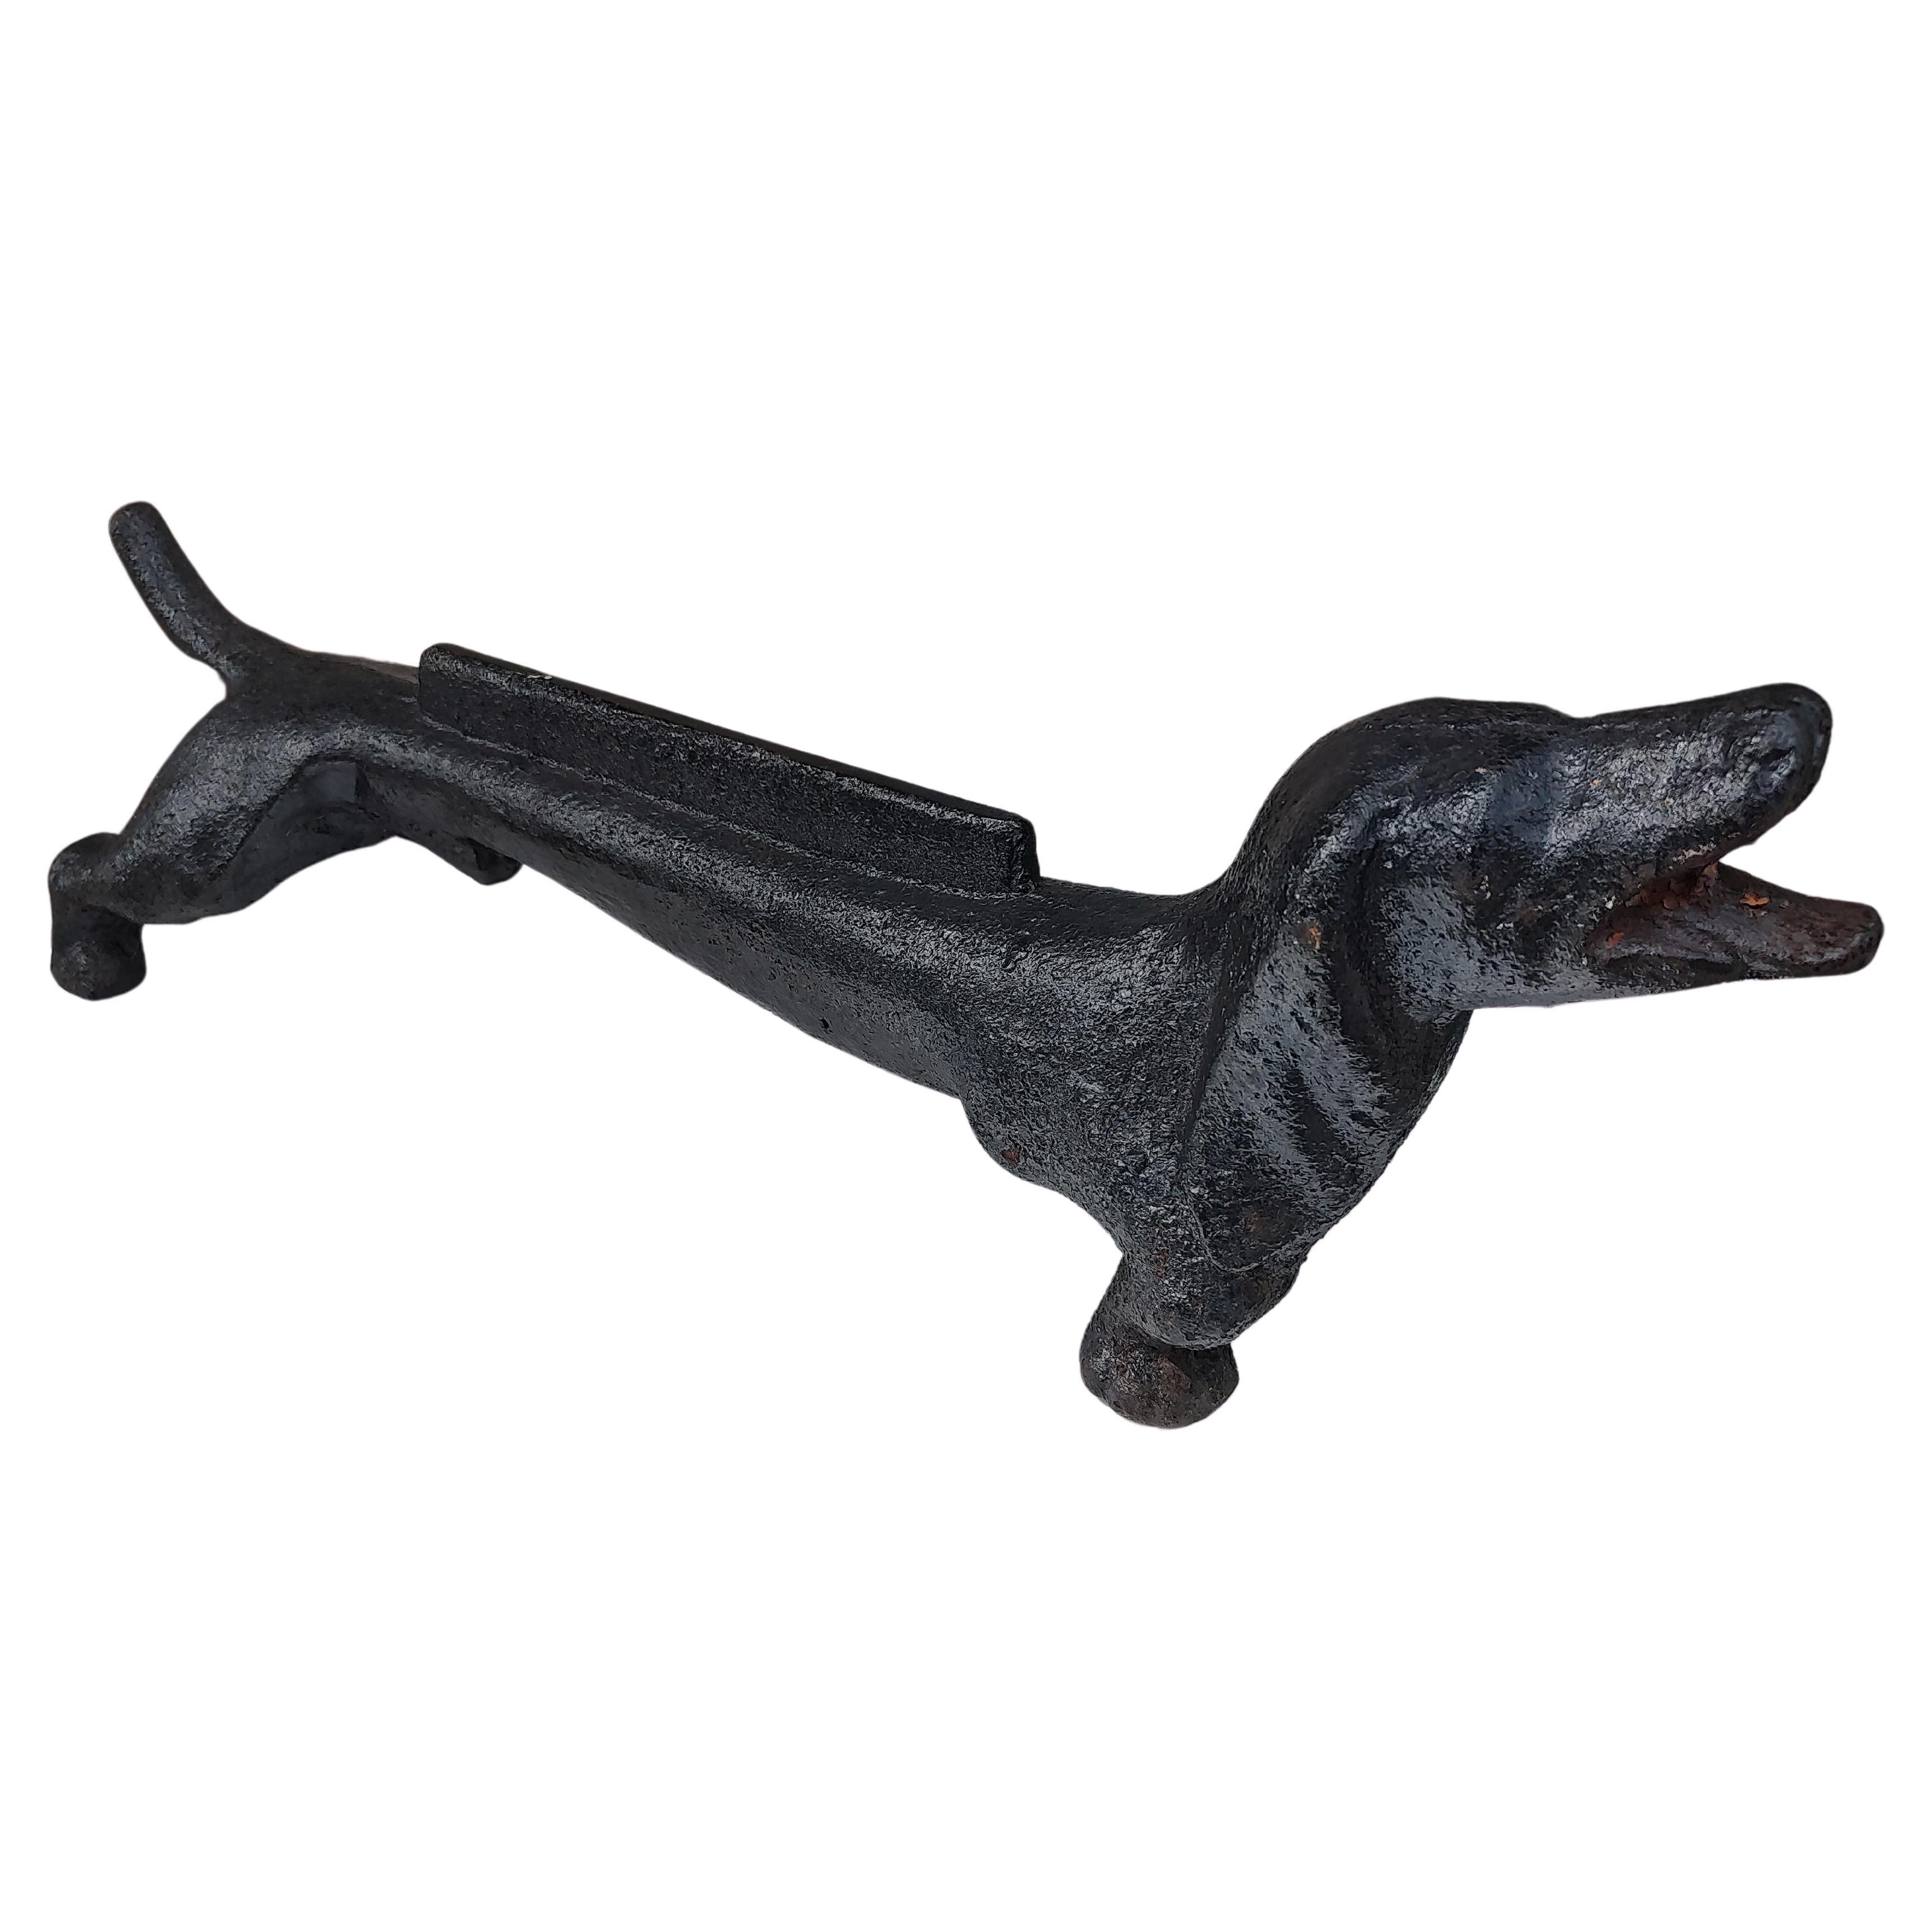 Fabelhafter Dackel-Stiefelabstreifer aus Gusseisen in schwarzer Farbe. Es sind zwei Exemplare erhältlich, das eine hat einen geraden Schwanz, das andere einen runden Schwanz. Andere kleine Unterschiede. In ausgezeichnetem Vintage-Zustand mit